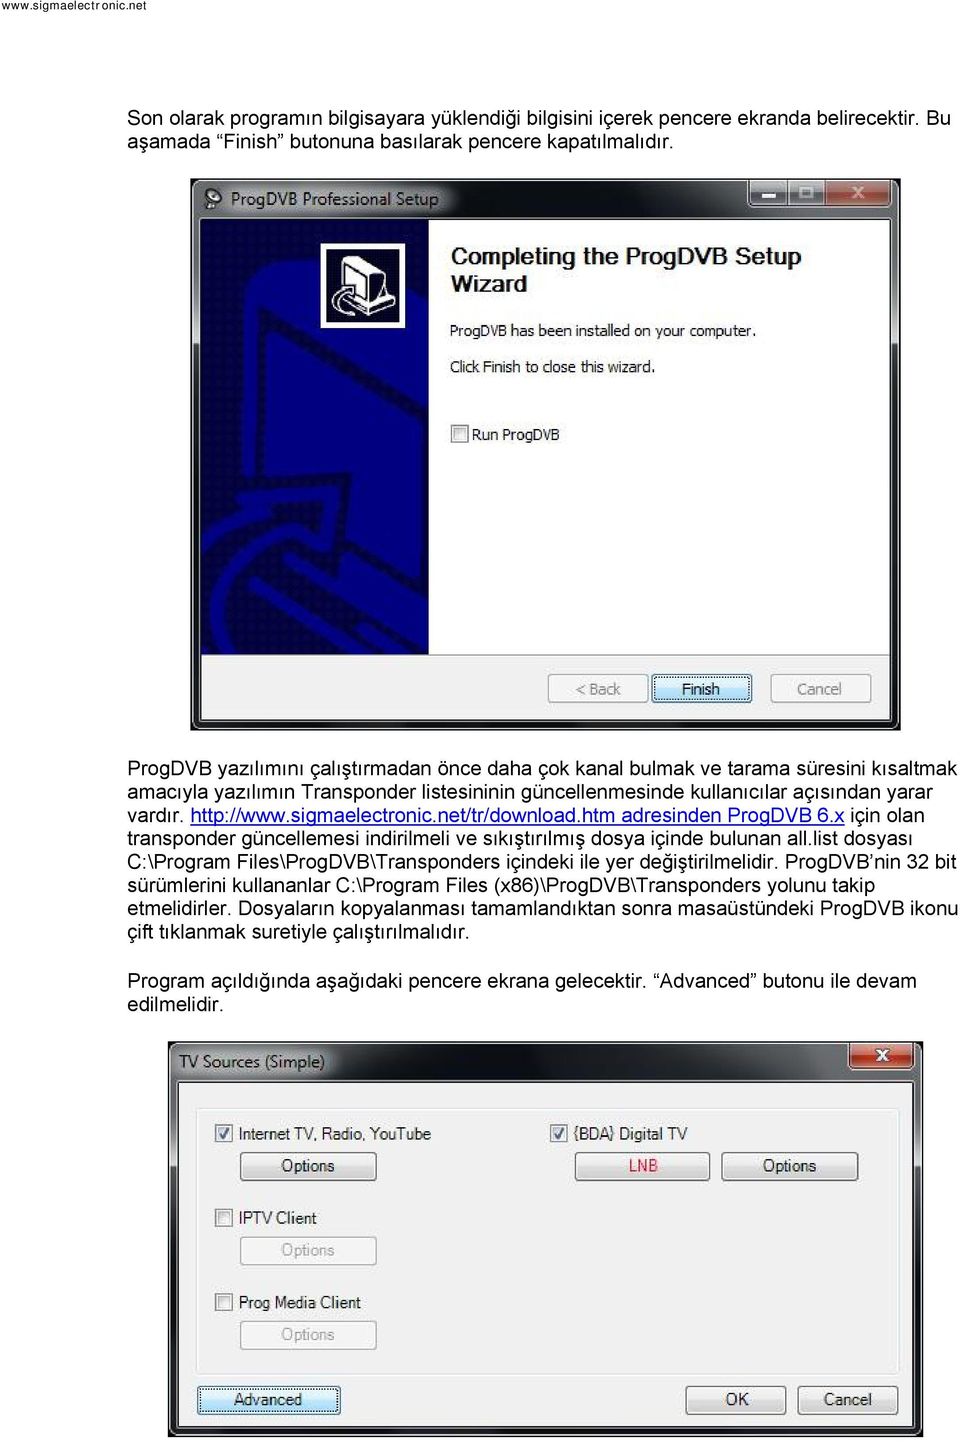 sigmaelectronic.net/tr/download.htm adresinden ProgDVB 6.x için olan transponder güncellemesi indirilmeli ve sıkıştırılmış dosya içinde bulunan all.